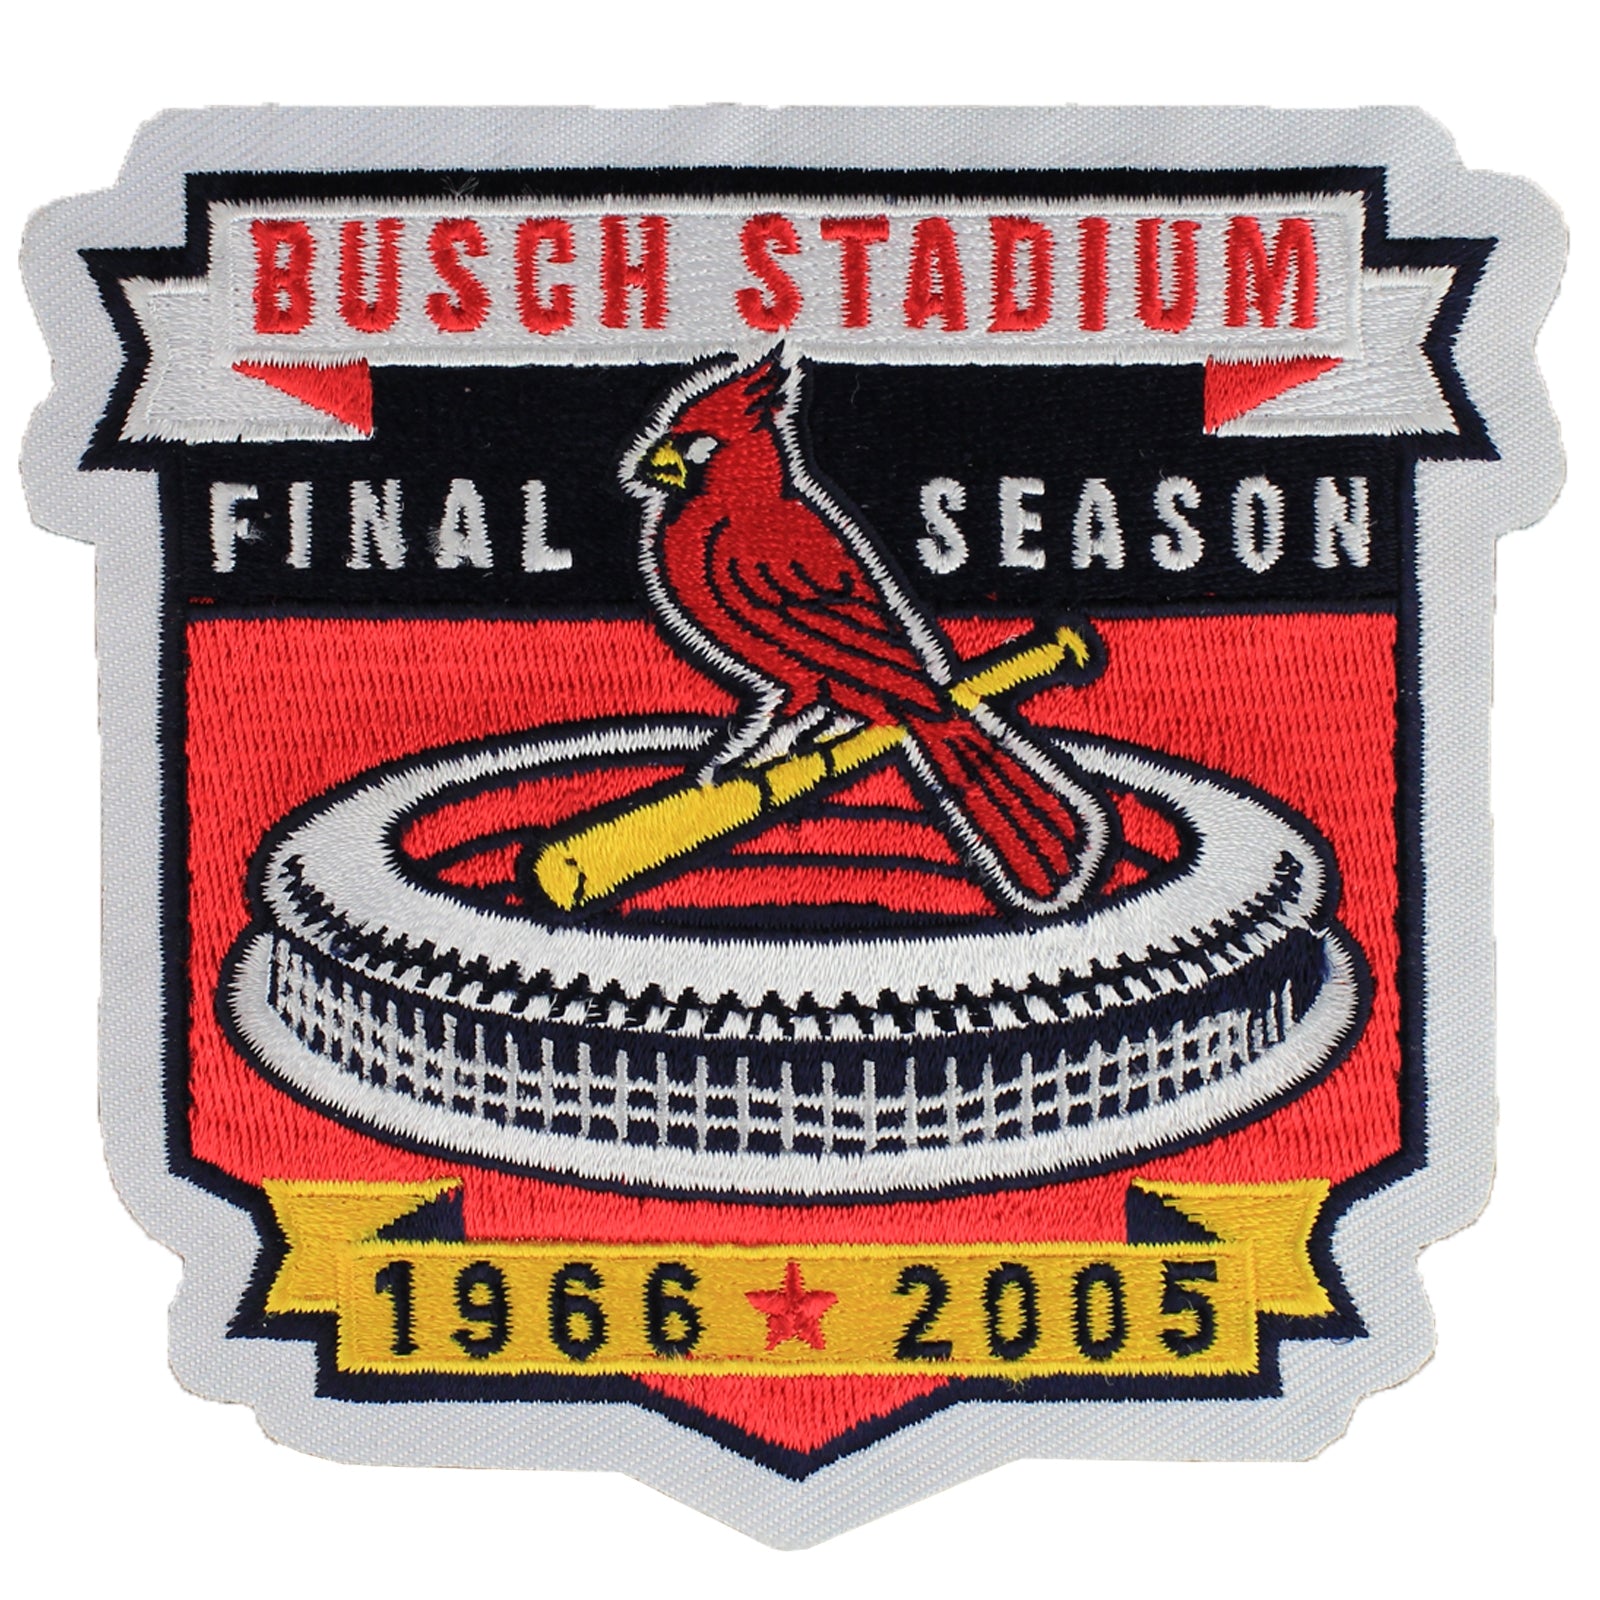 St. Louis Cardinals Final Season 2005 Jersey Patch (Busch Stadium) 